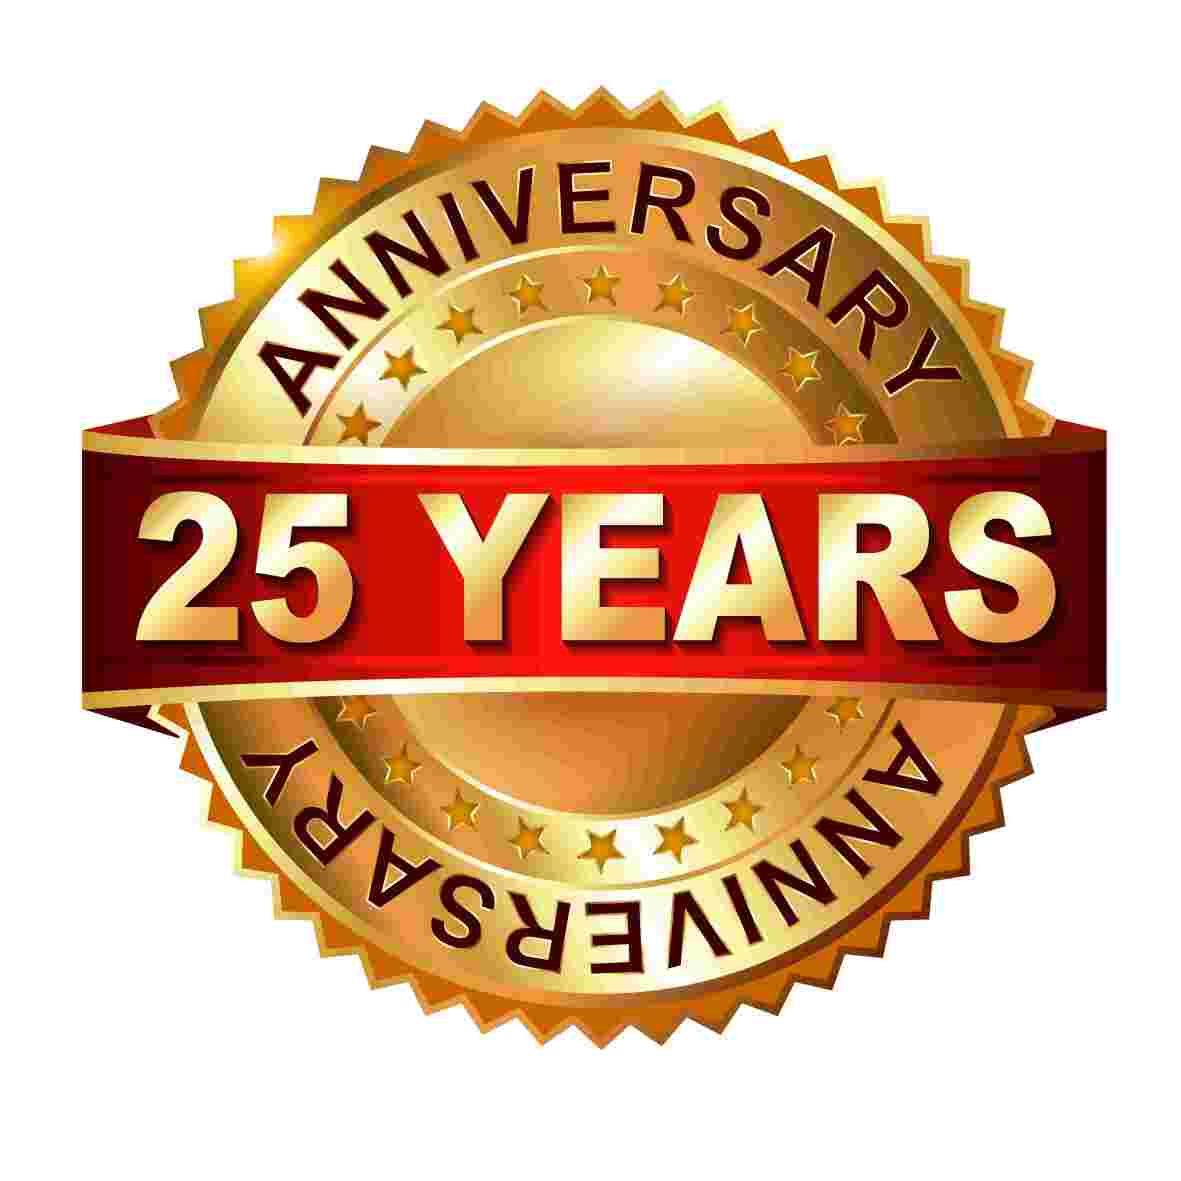 Anniversary: 25 Years